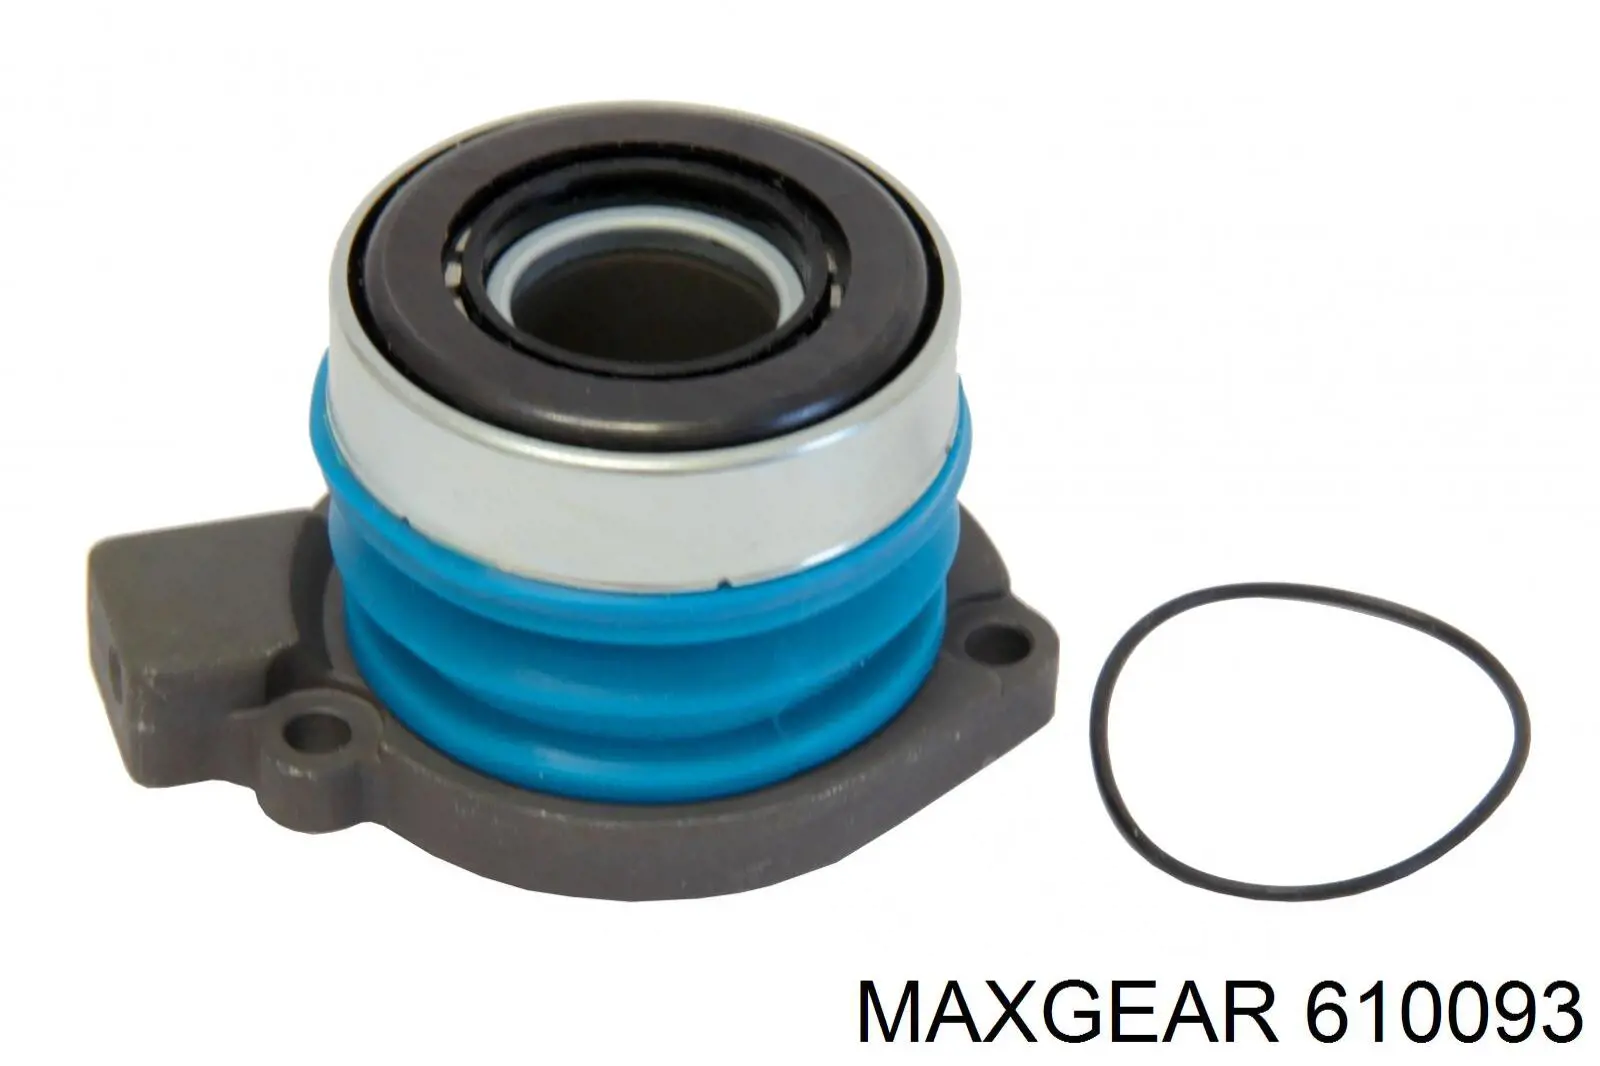 61-0093 Maxgear рабочий цилиндр сцепления в сборе с выжимным подшипником